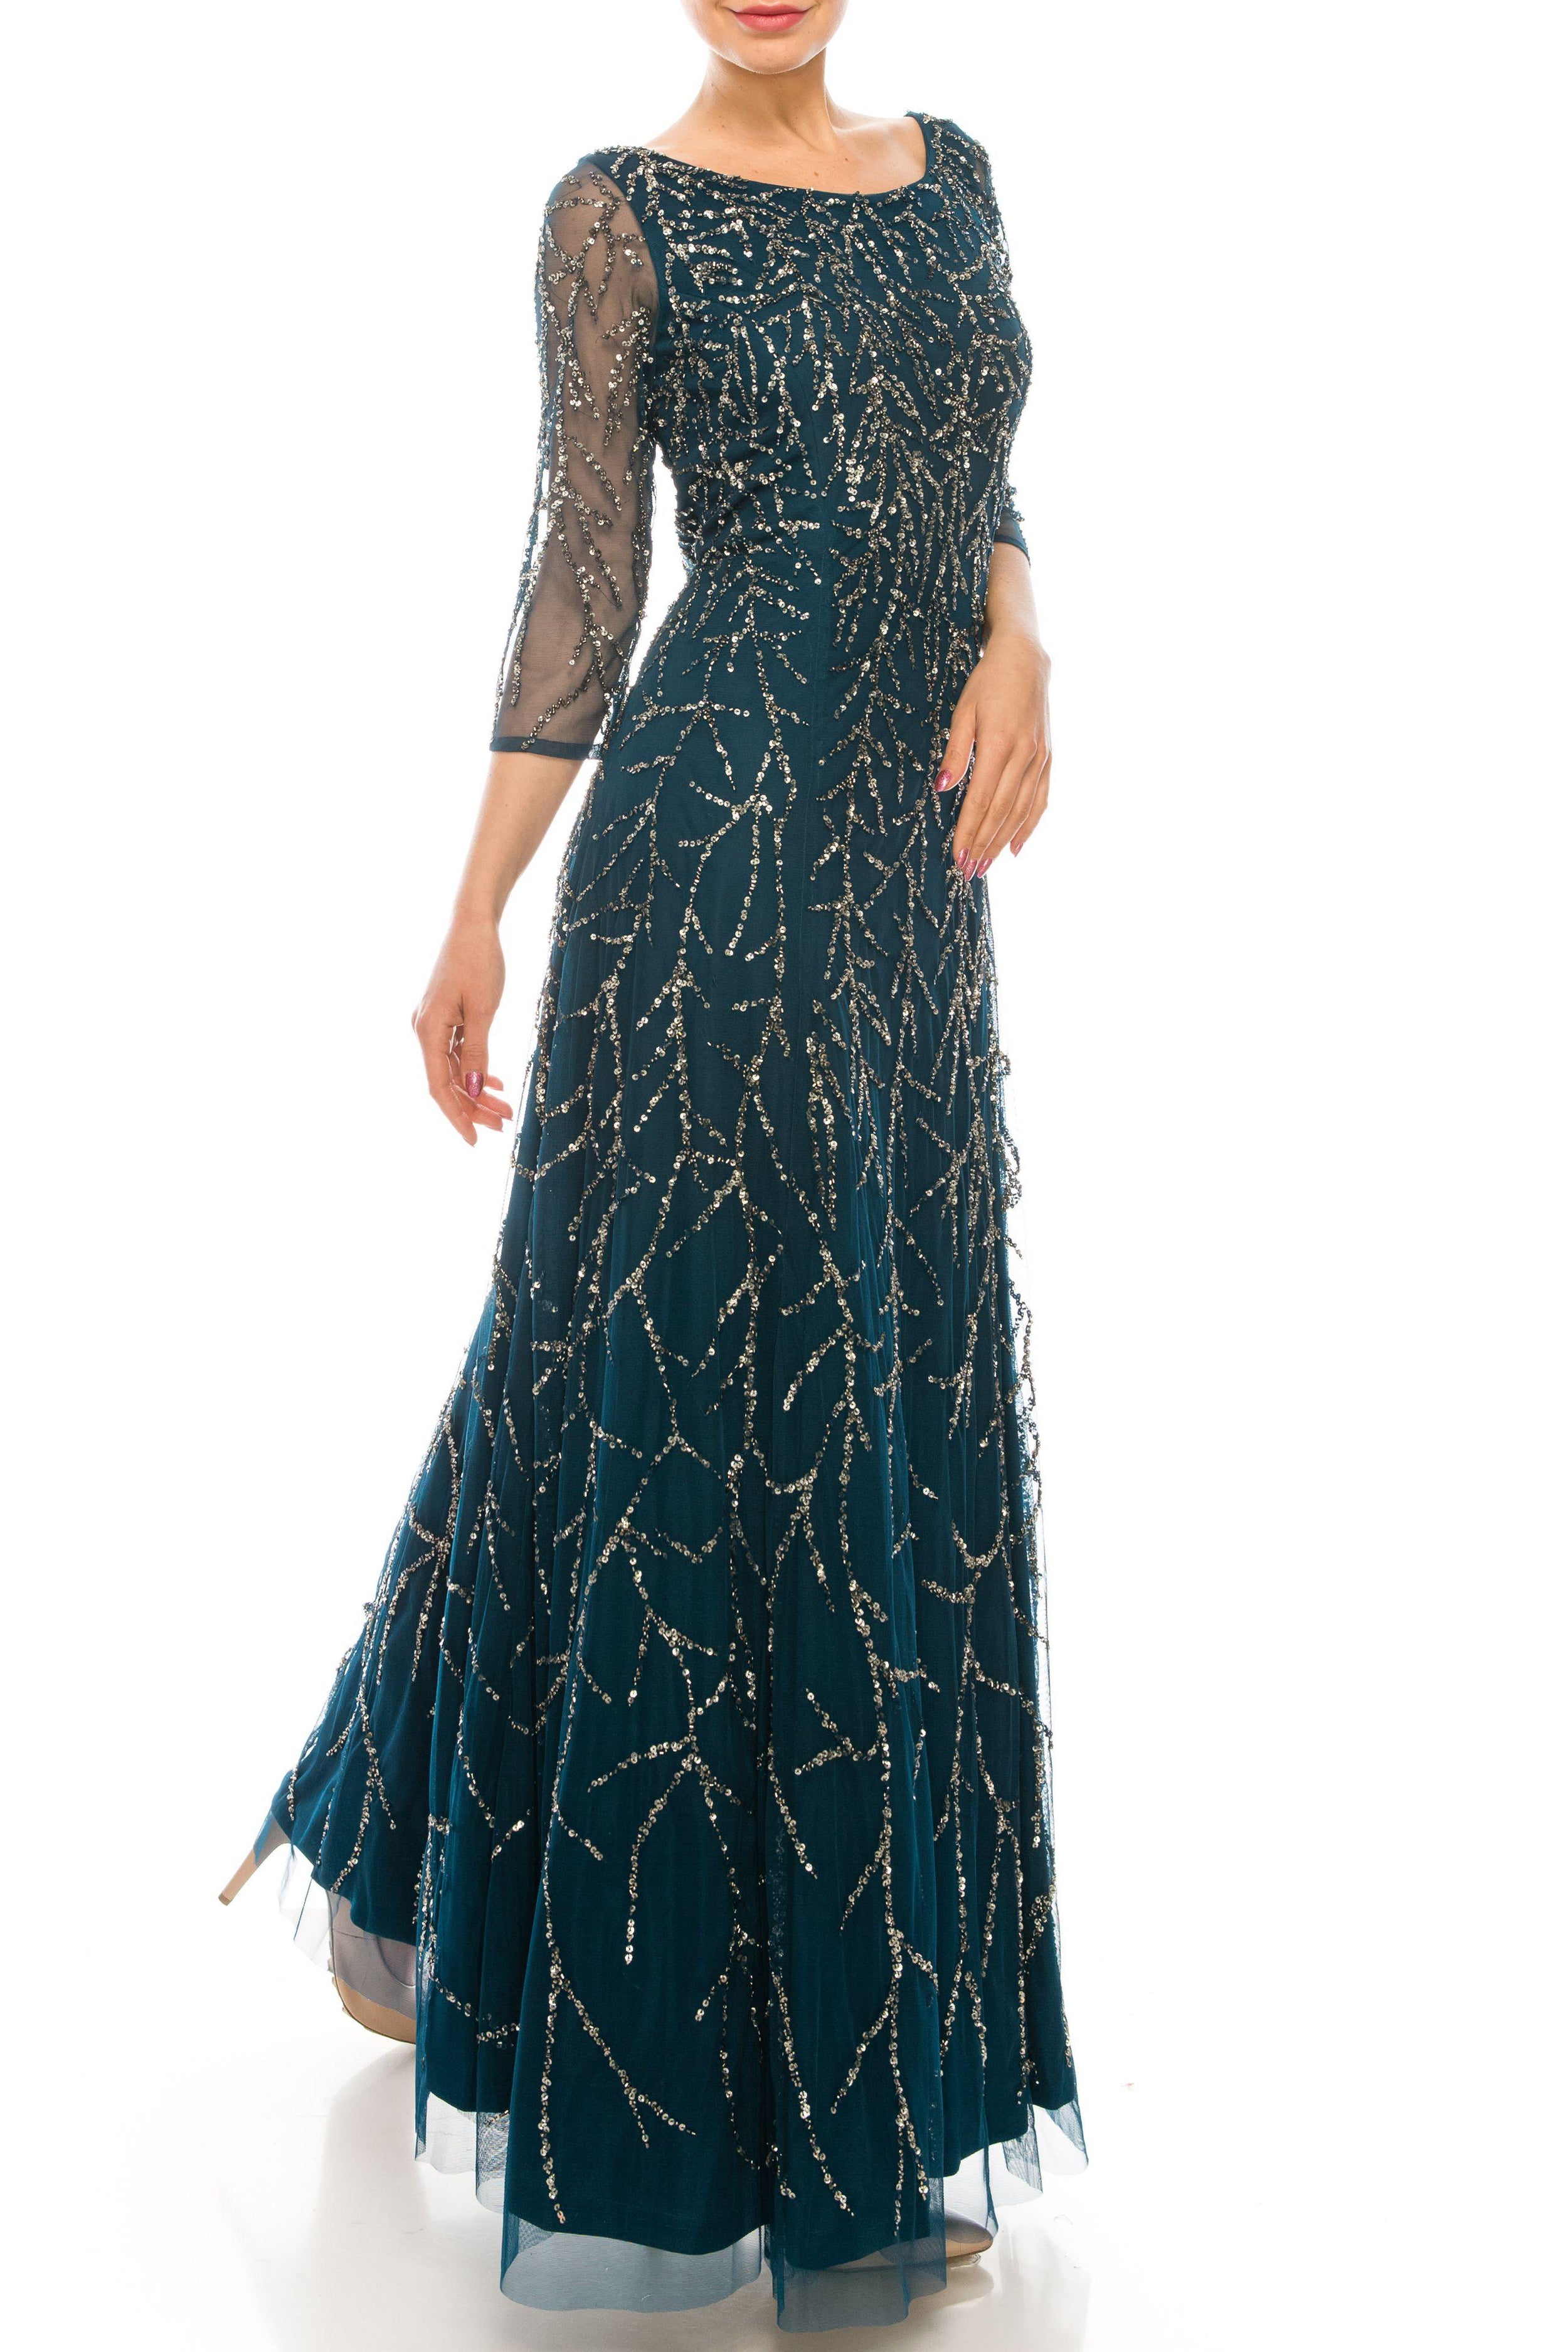 Aidan Mattox Long Formal 3/4 Sleeve Dress MD1E204628 - The Dress Outlet